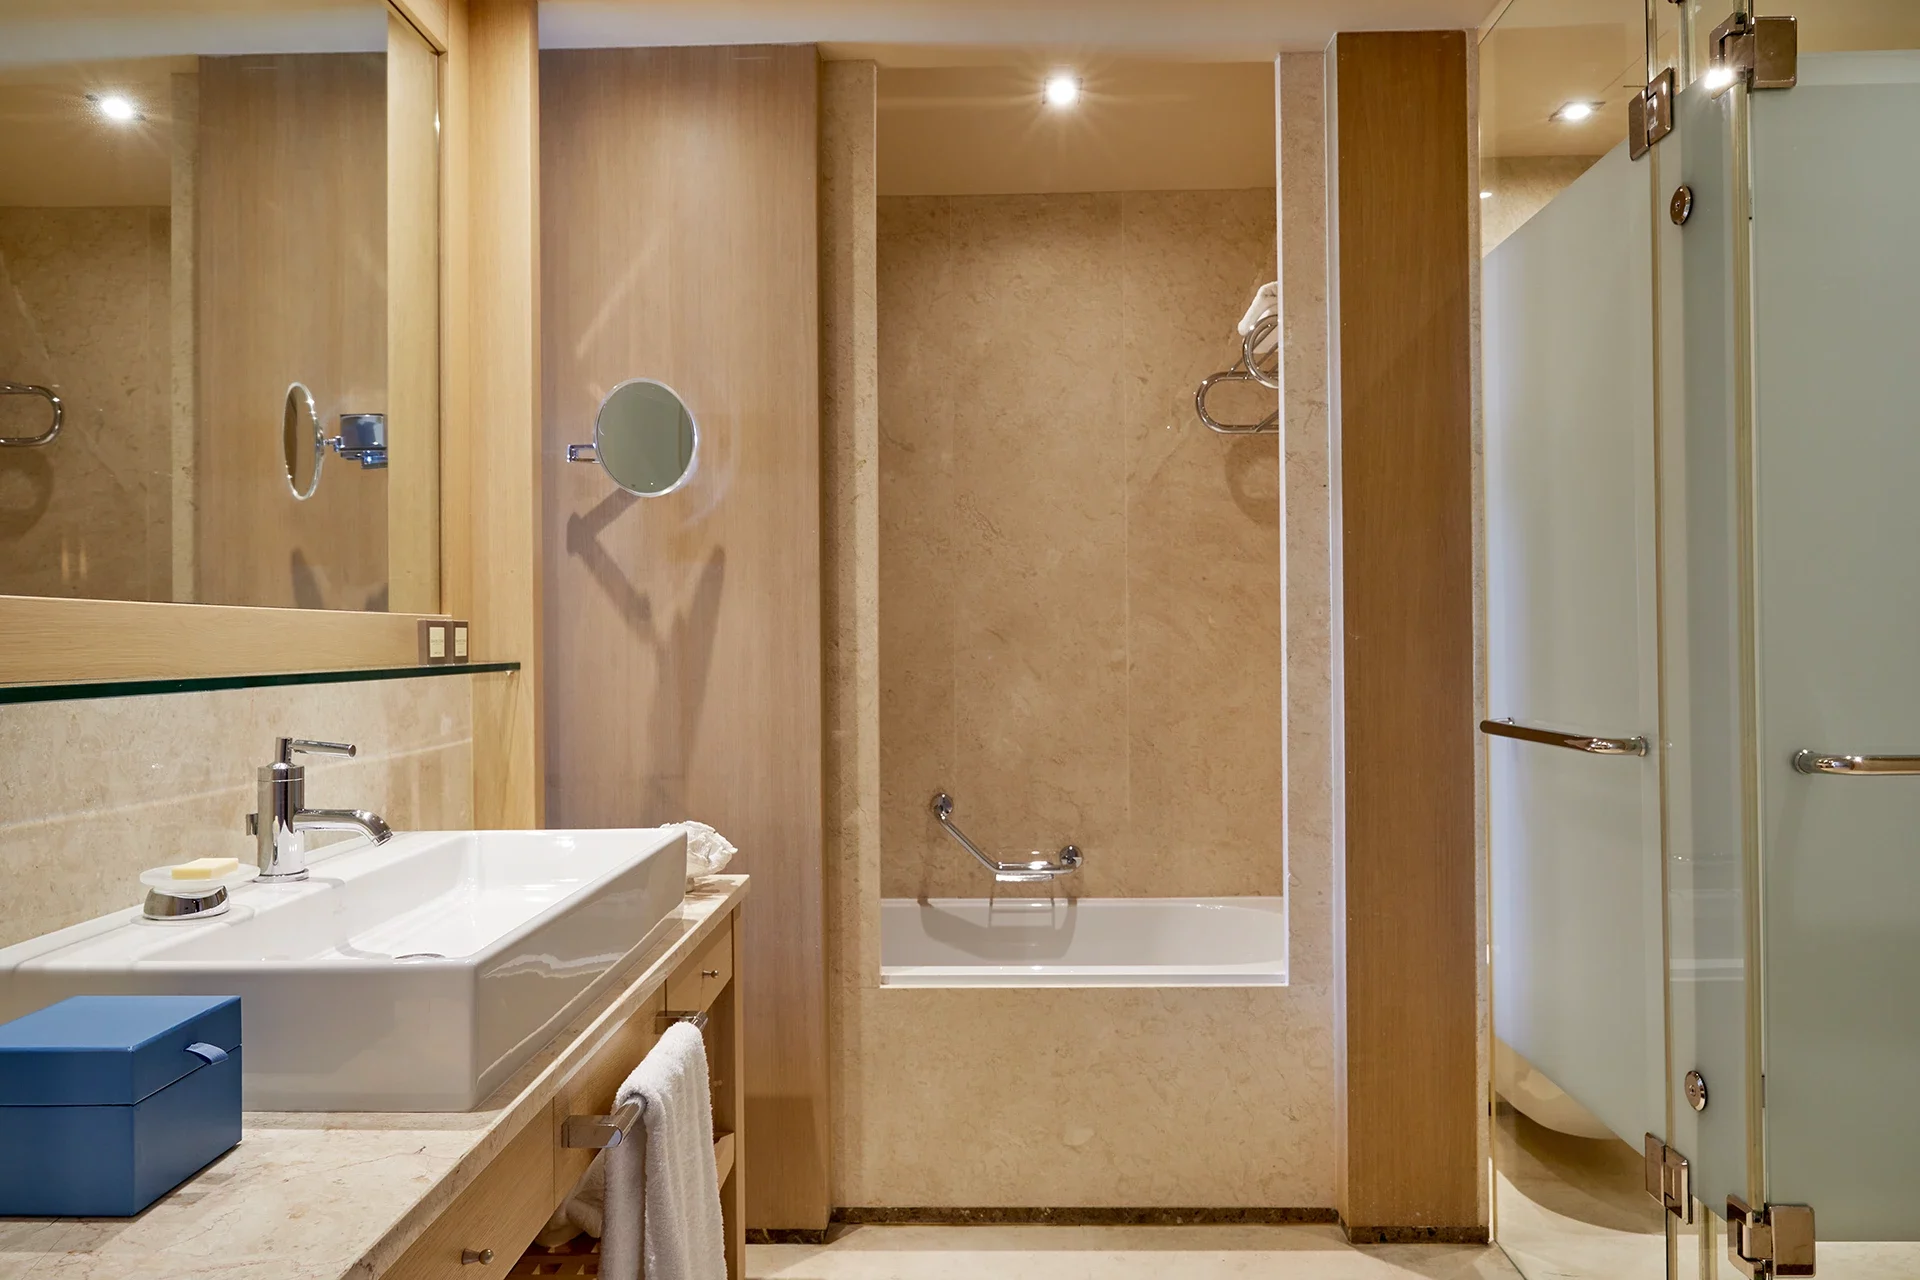 Badezimmer aus sandfarbenem Stein